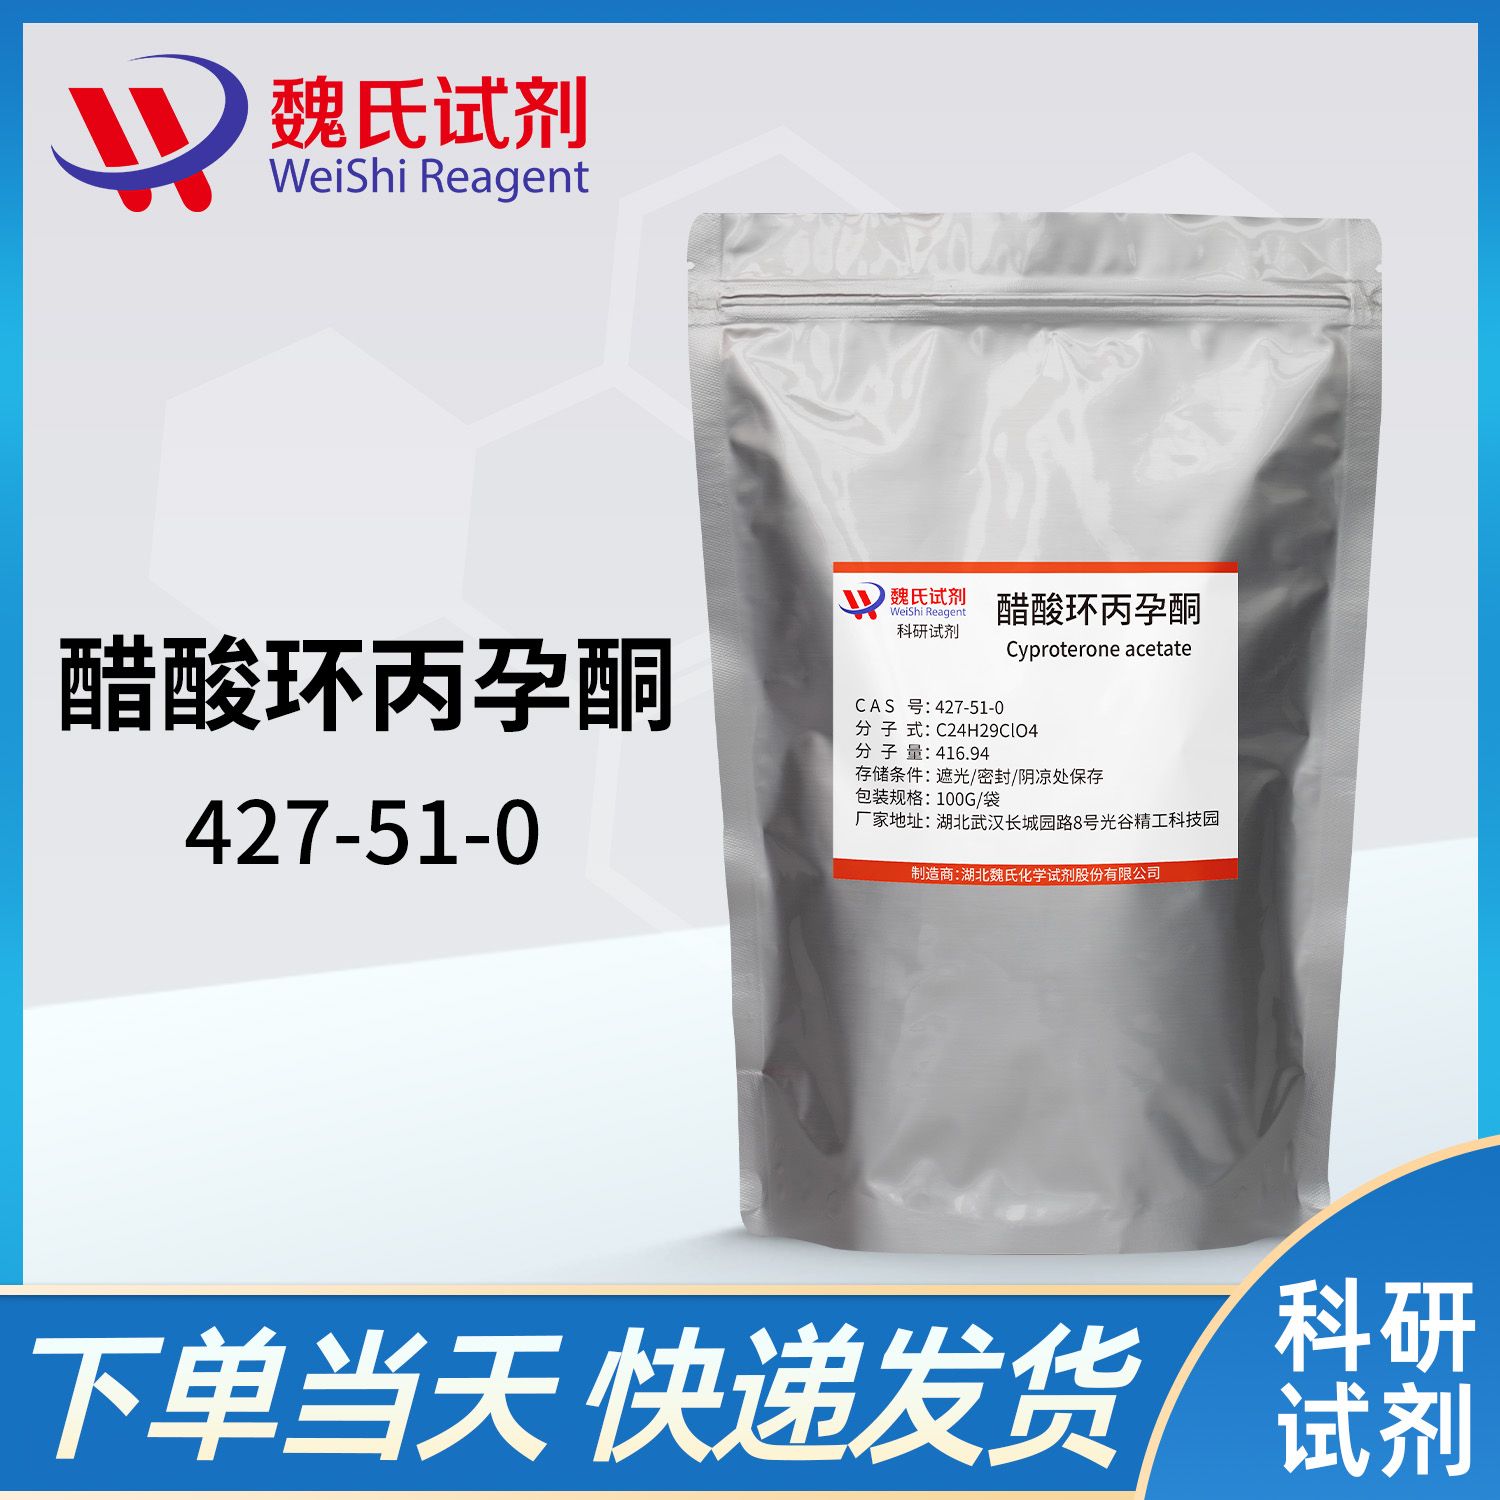 427-51-0 /醋酸环丙氯地孕酮/cyproterone acetate